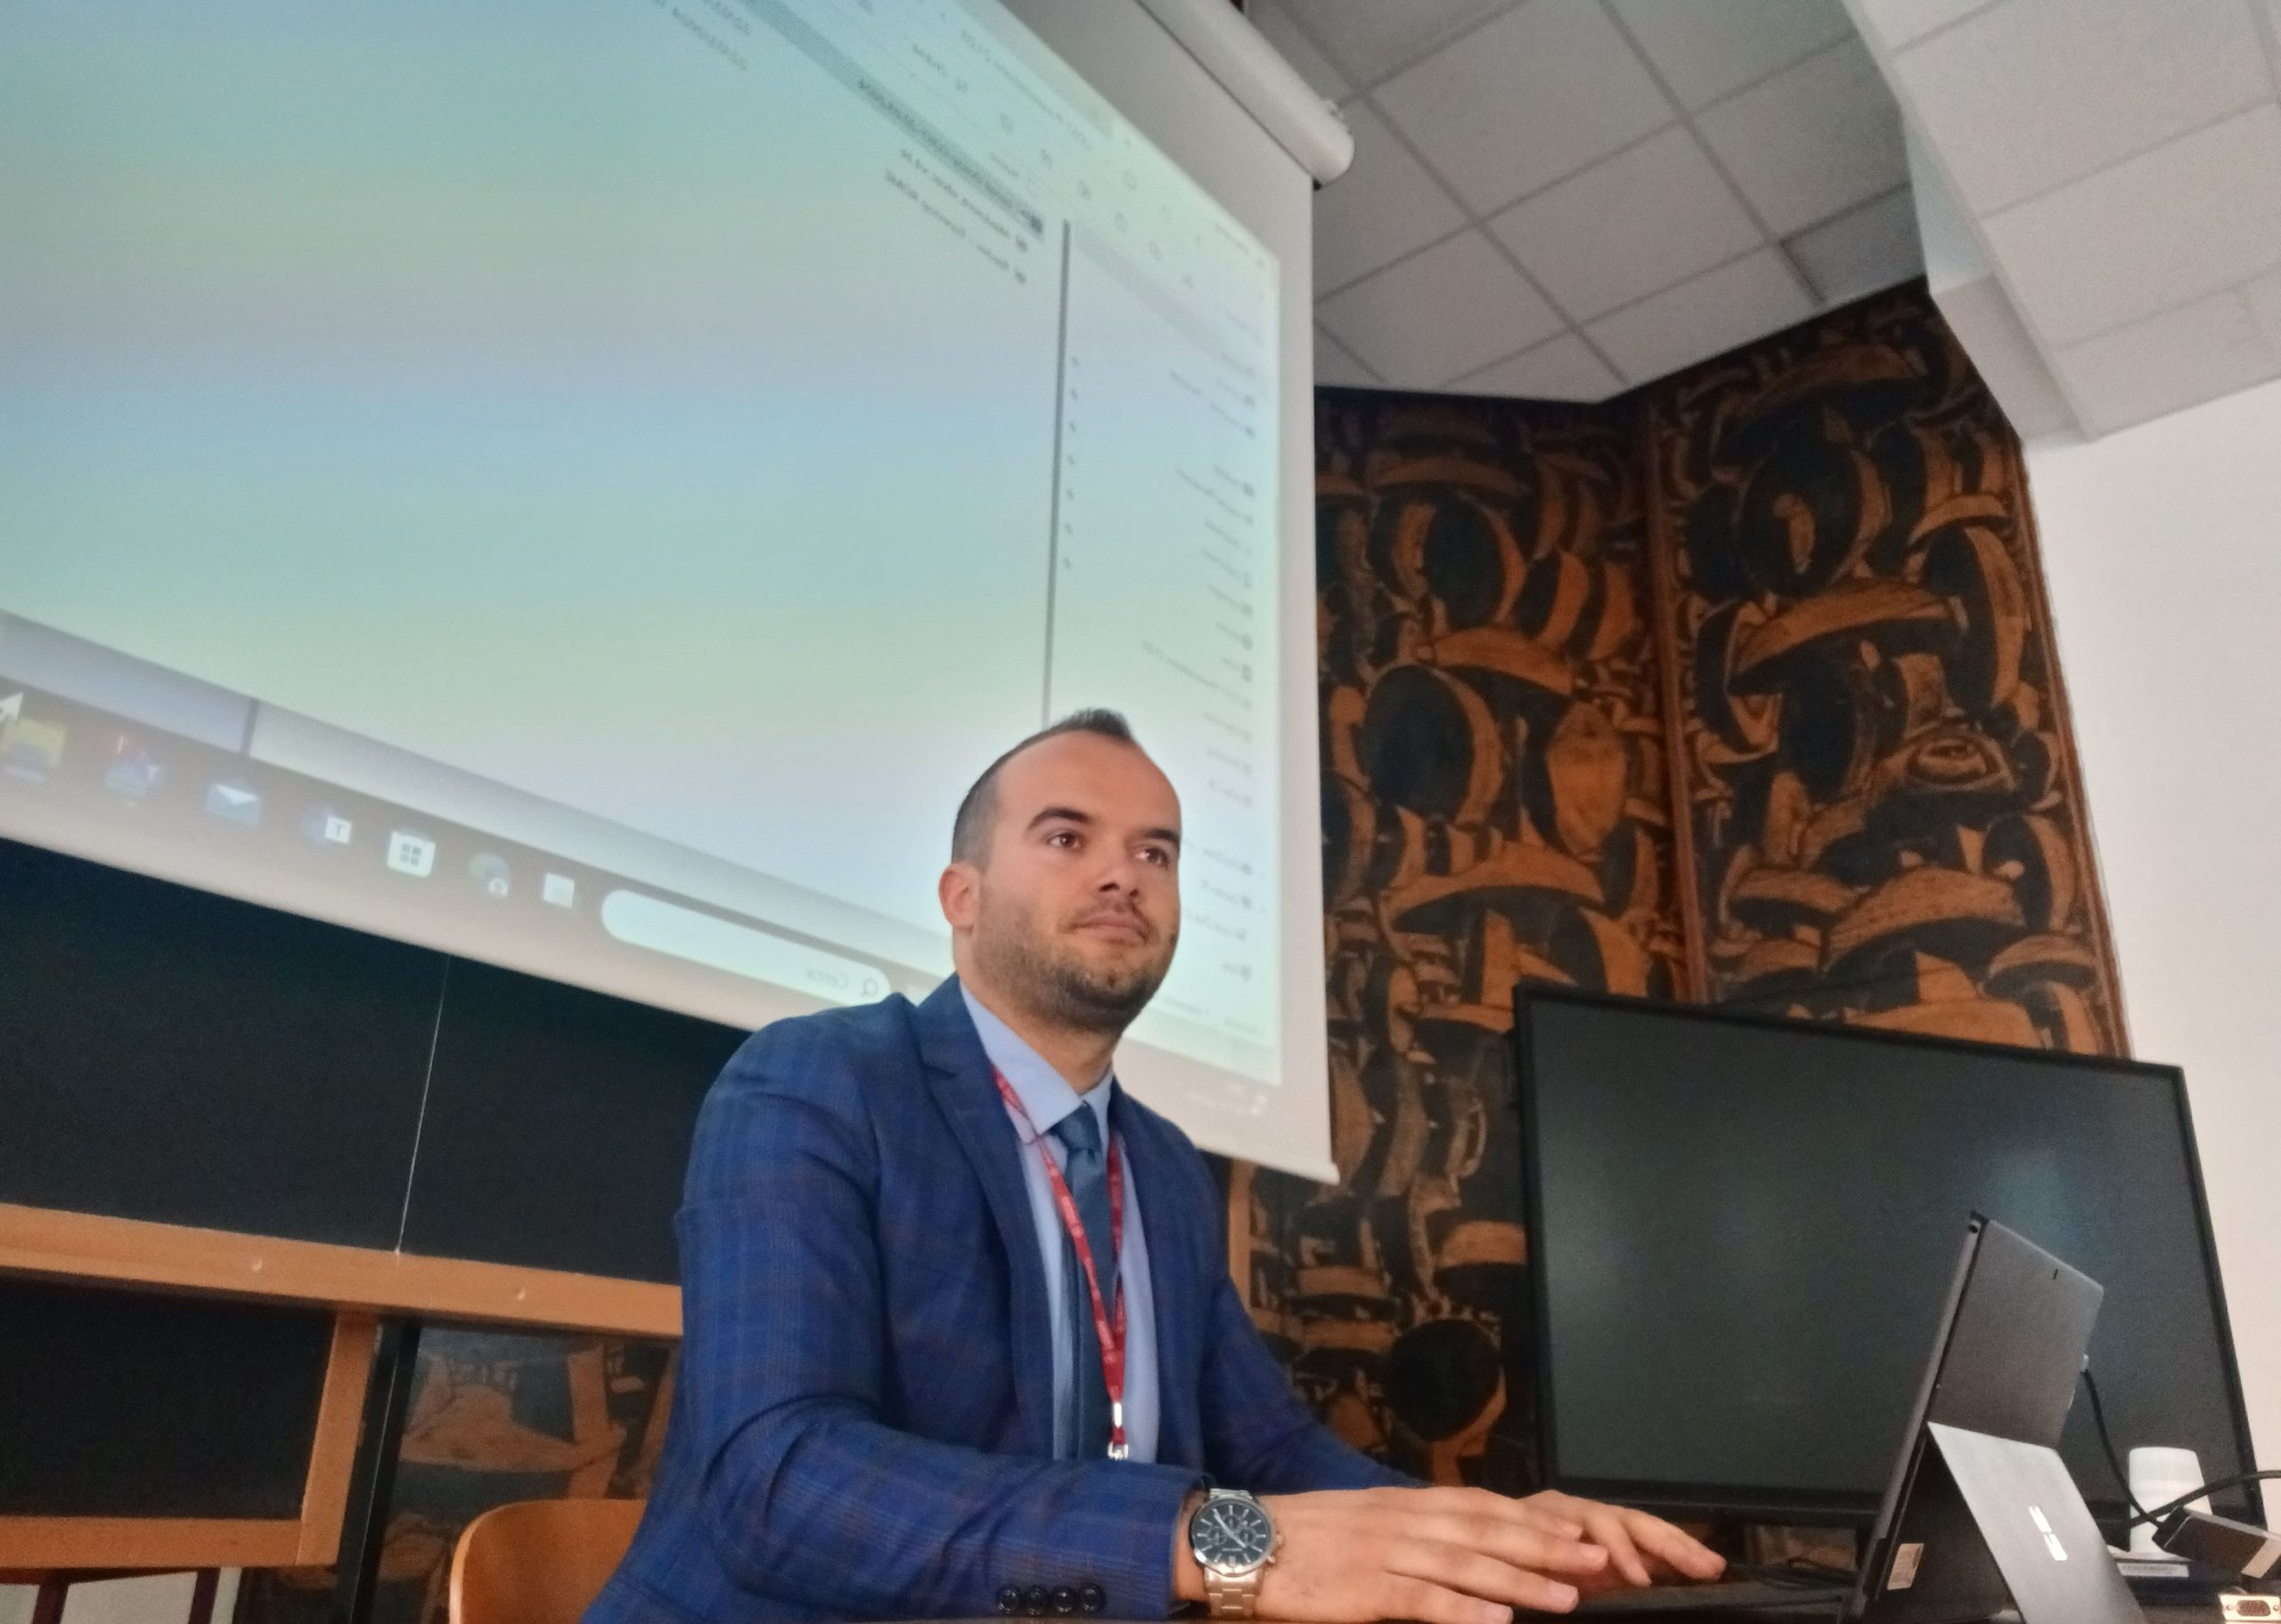 Profesori i UBT-së, Demokrat Nuha mori pjesë në Konferencën Shkencore të organizuar nga COST në Universitetin Sapienza të Romës